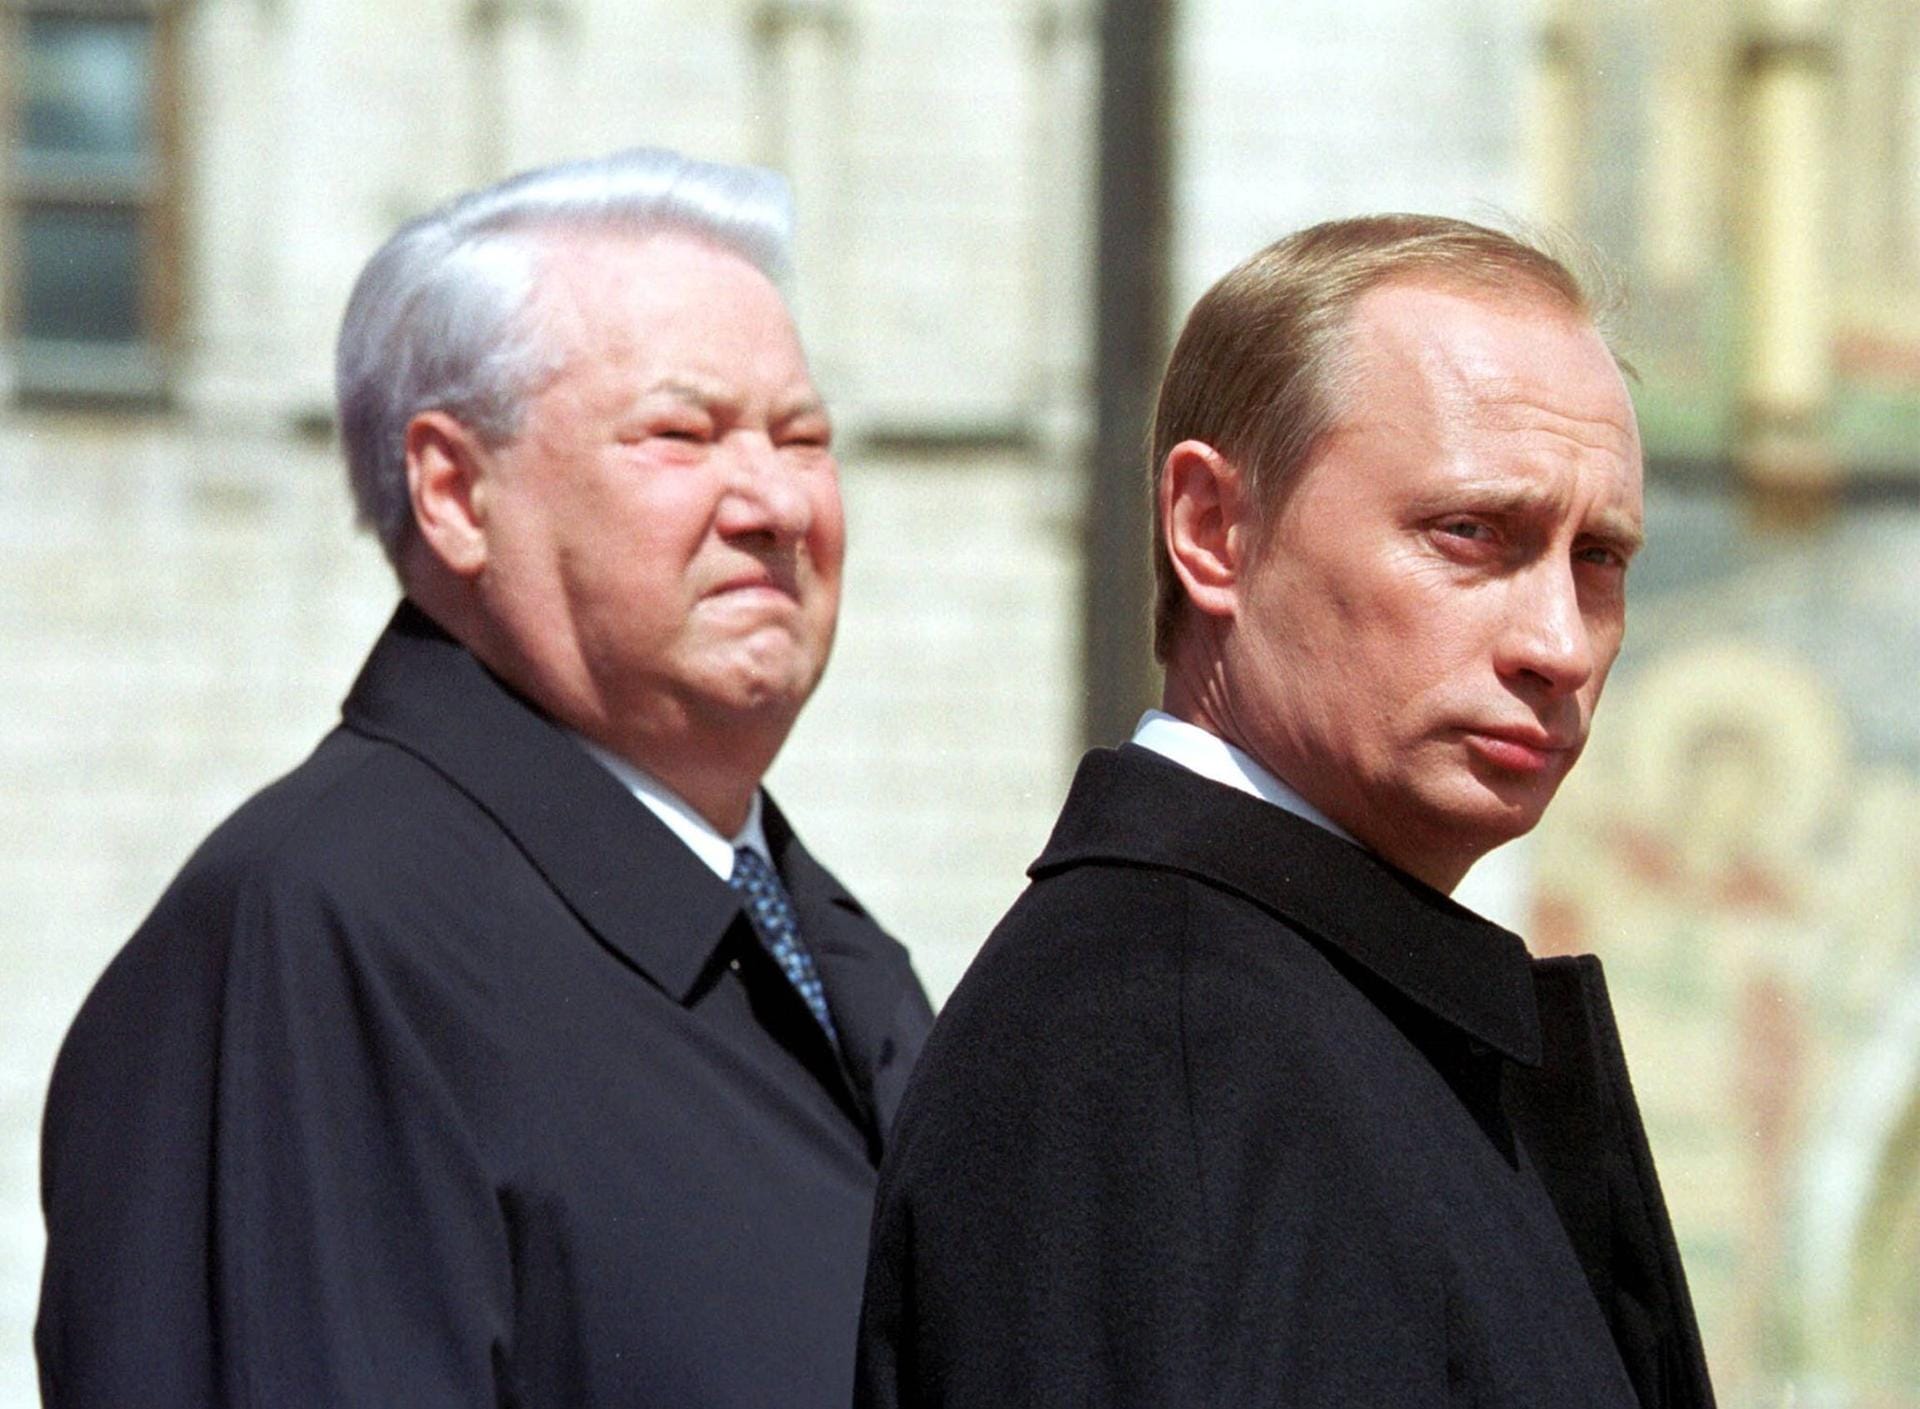 Ende der Neunziger-Jahre nimmt Putins Karriere Fahrt auf: 1998 wird er zunächst Chef des russischen Inlandsgeheimdienstes FSB, 1999 dann zusätzlich Sicherheitsberater für den damaligen Präsidenten Boris Jelzin und schließlich noch im selben Jahr Ministerpräsident.